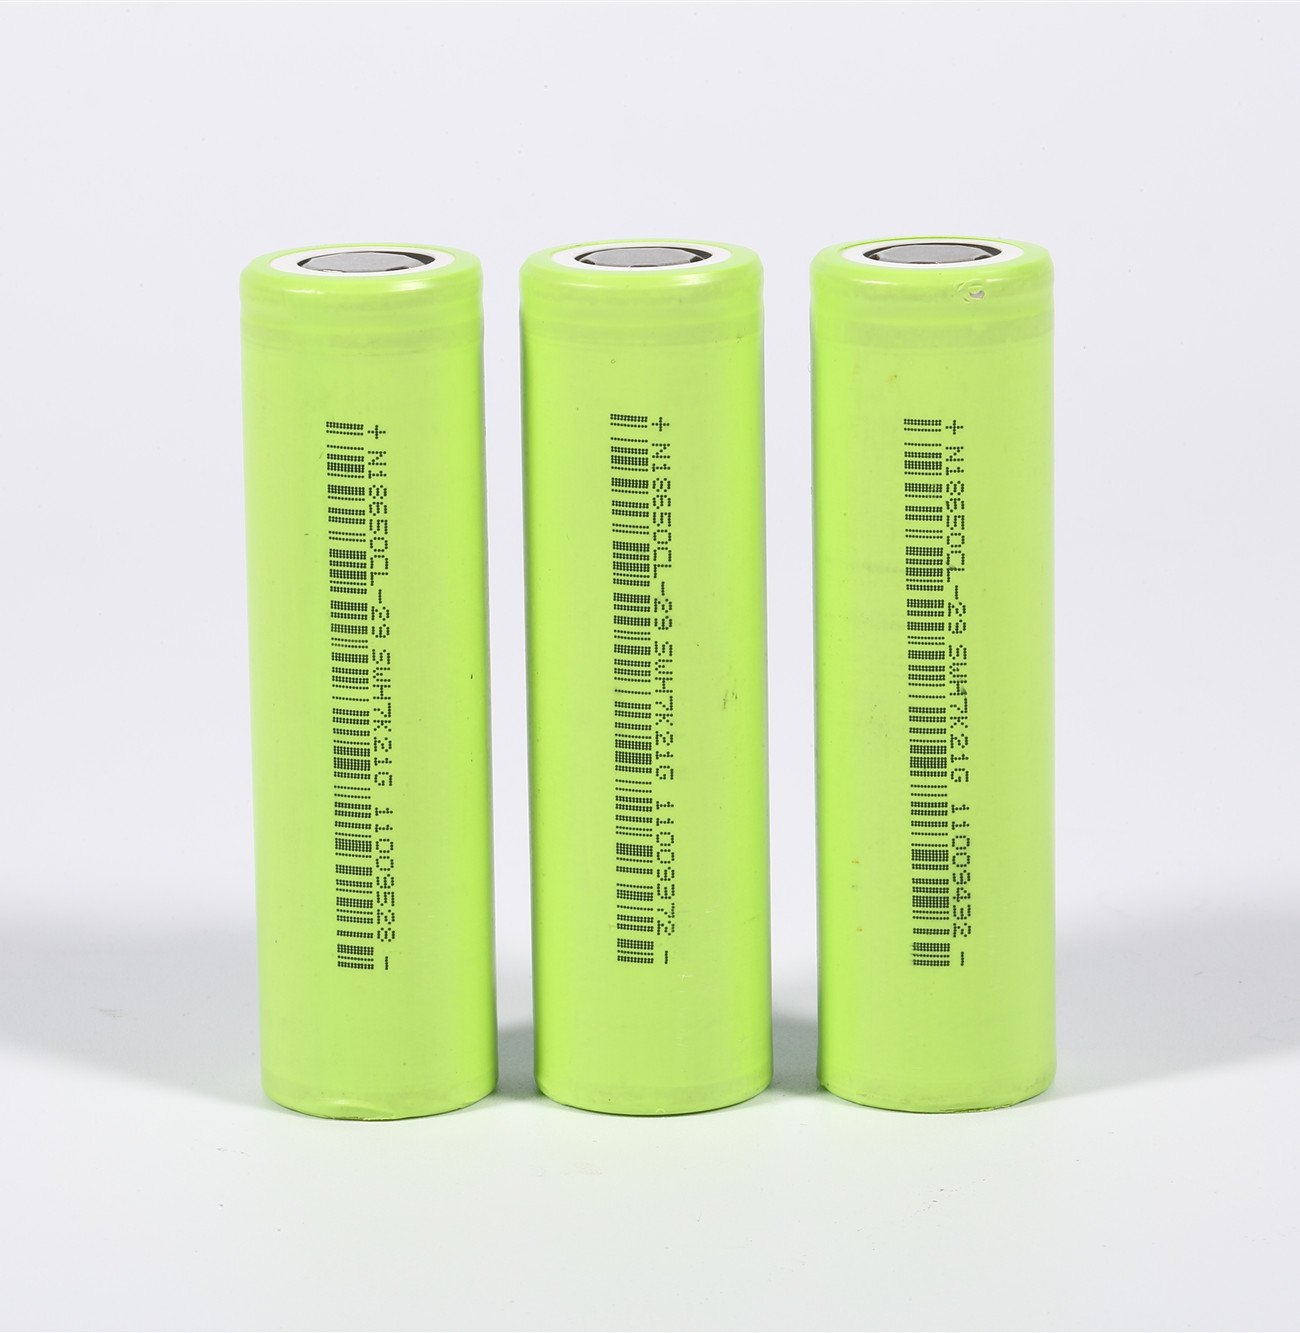 Baterias 18650 verdes de 3,6 volts no frete do porto